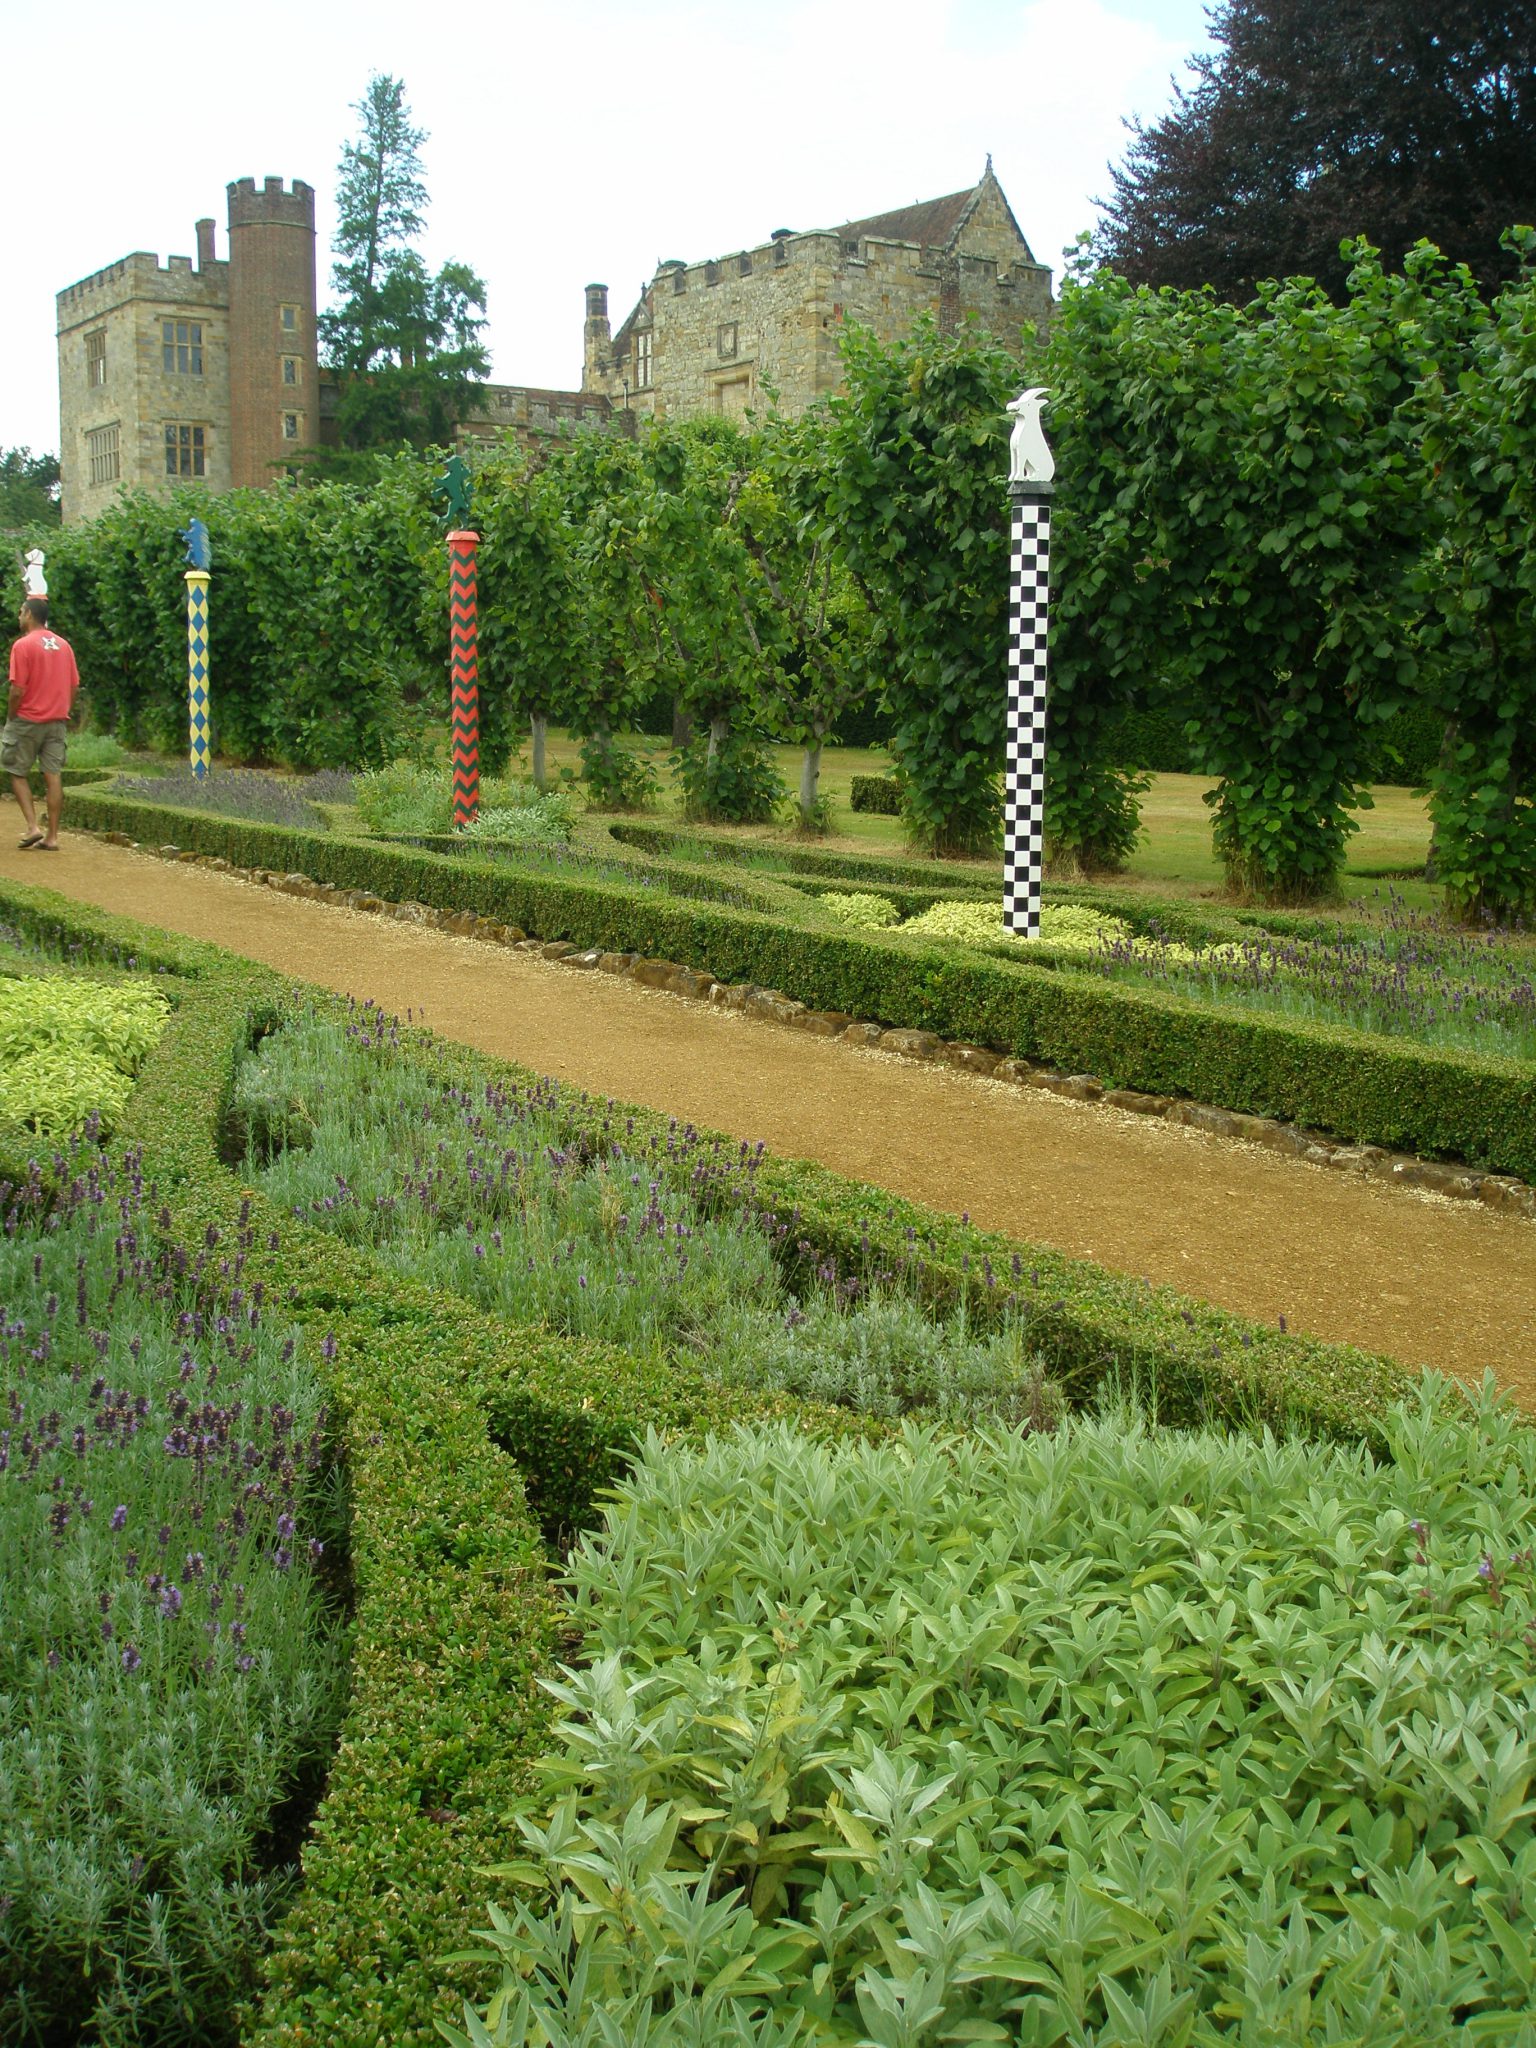 Another view of The Heraldic Garden